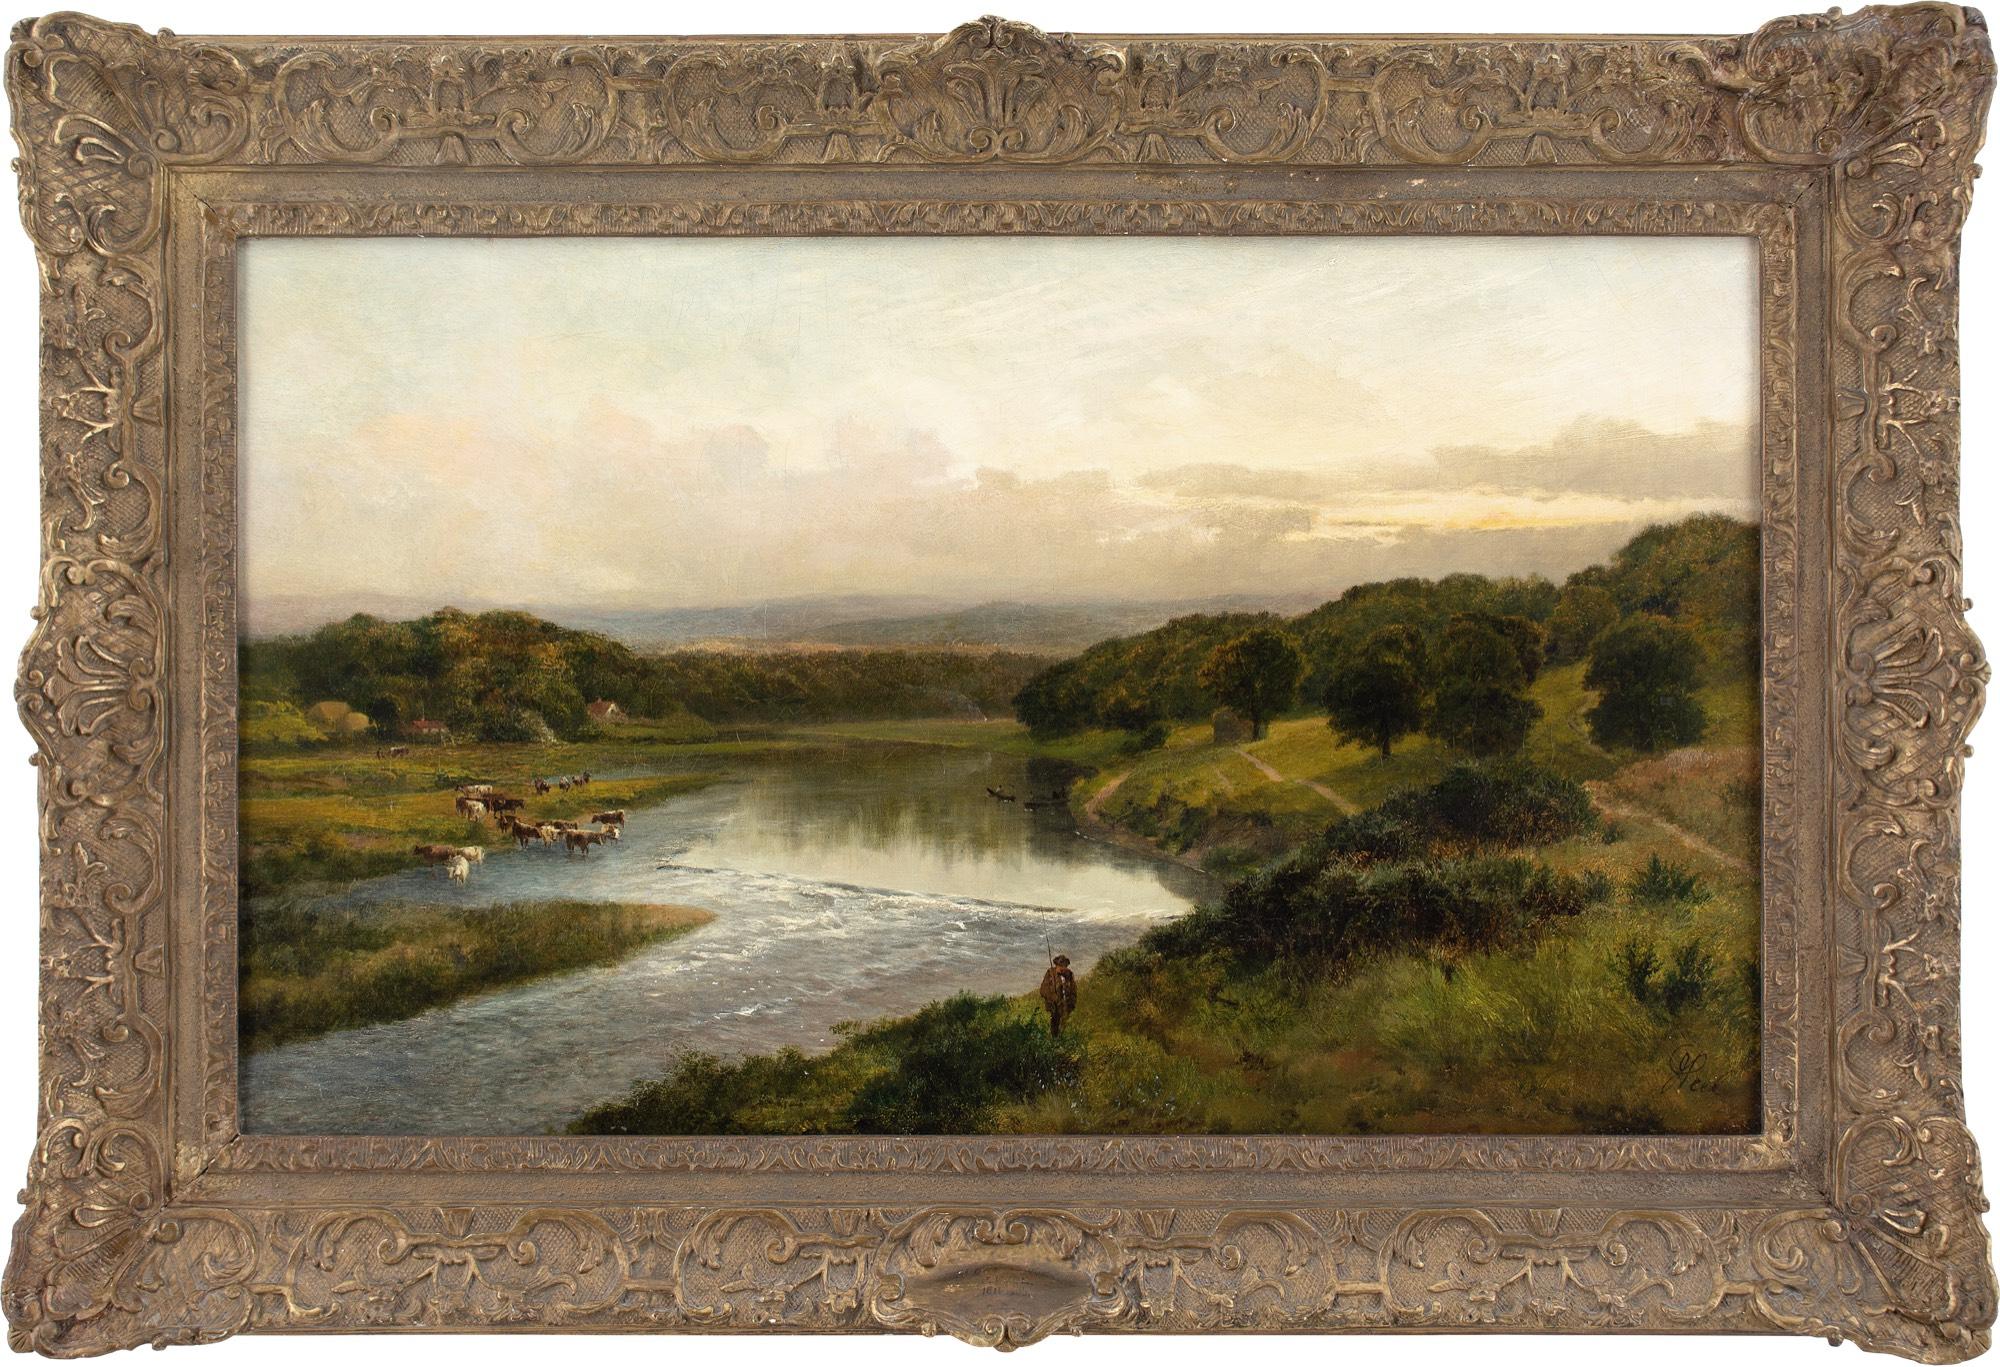 James Peel RBA Landscape Painting – James Peel, Along The Wye, Ölgemälde 